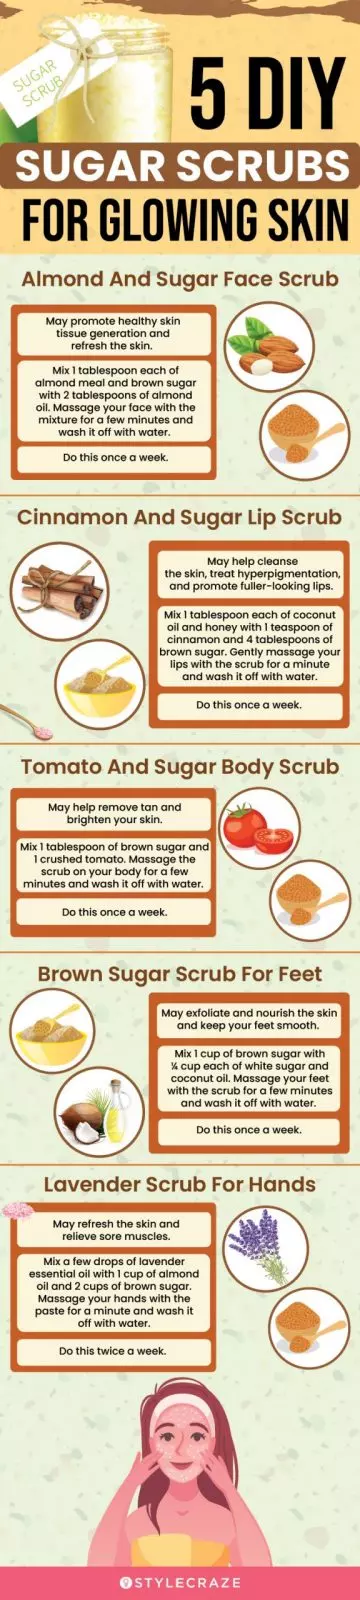 5 diy sugar scrubs for glowing skin (infographic)